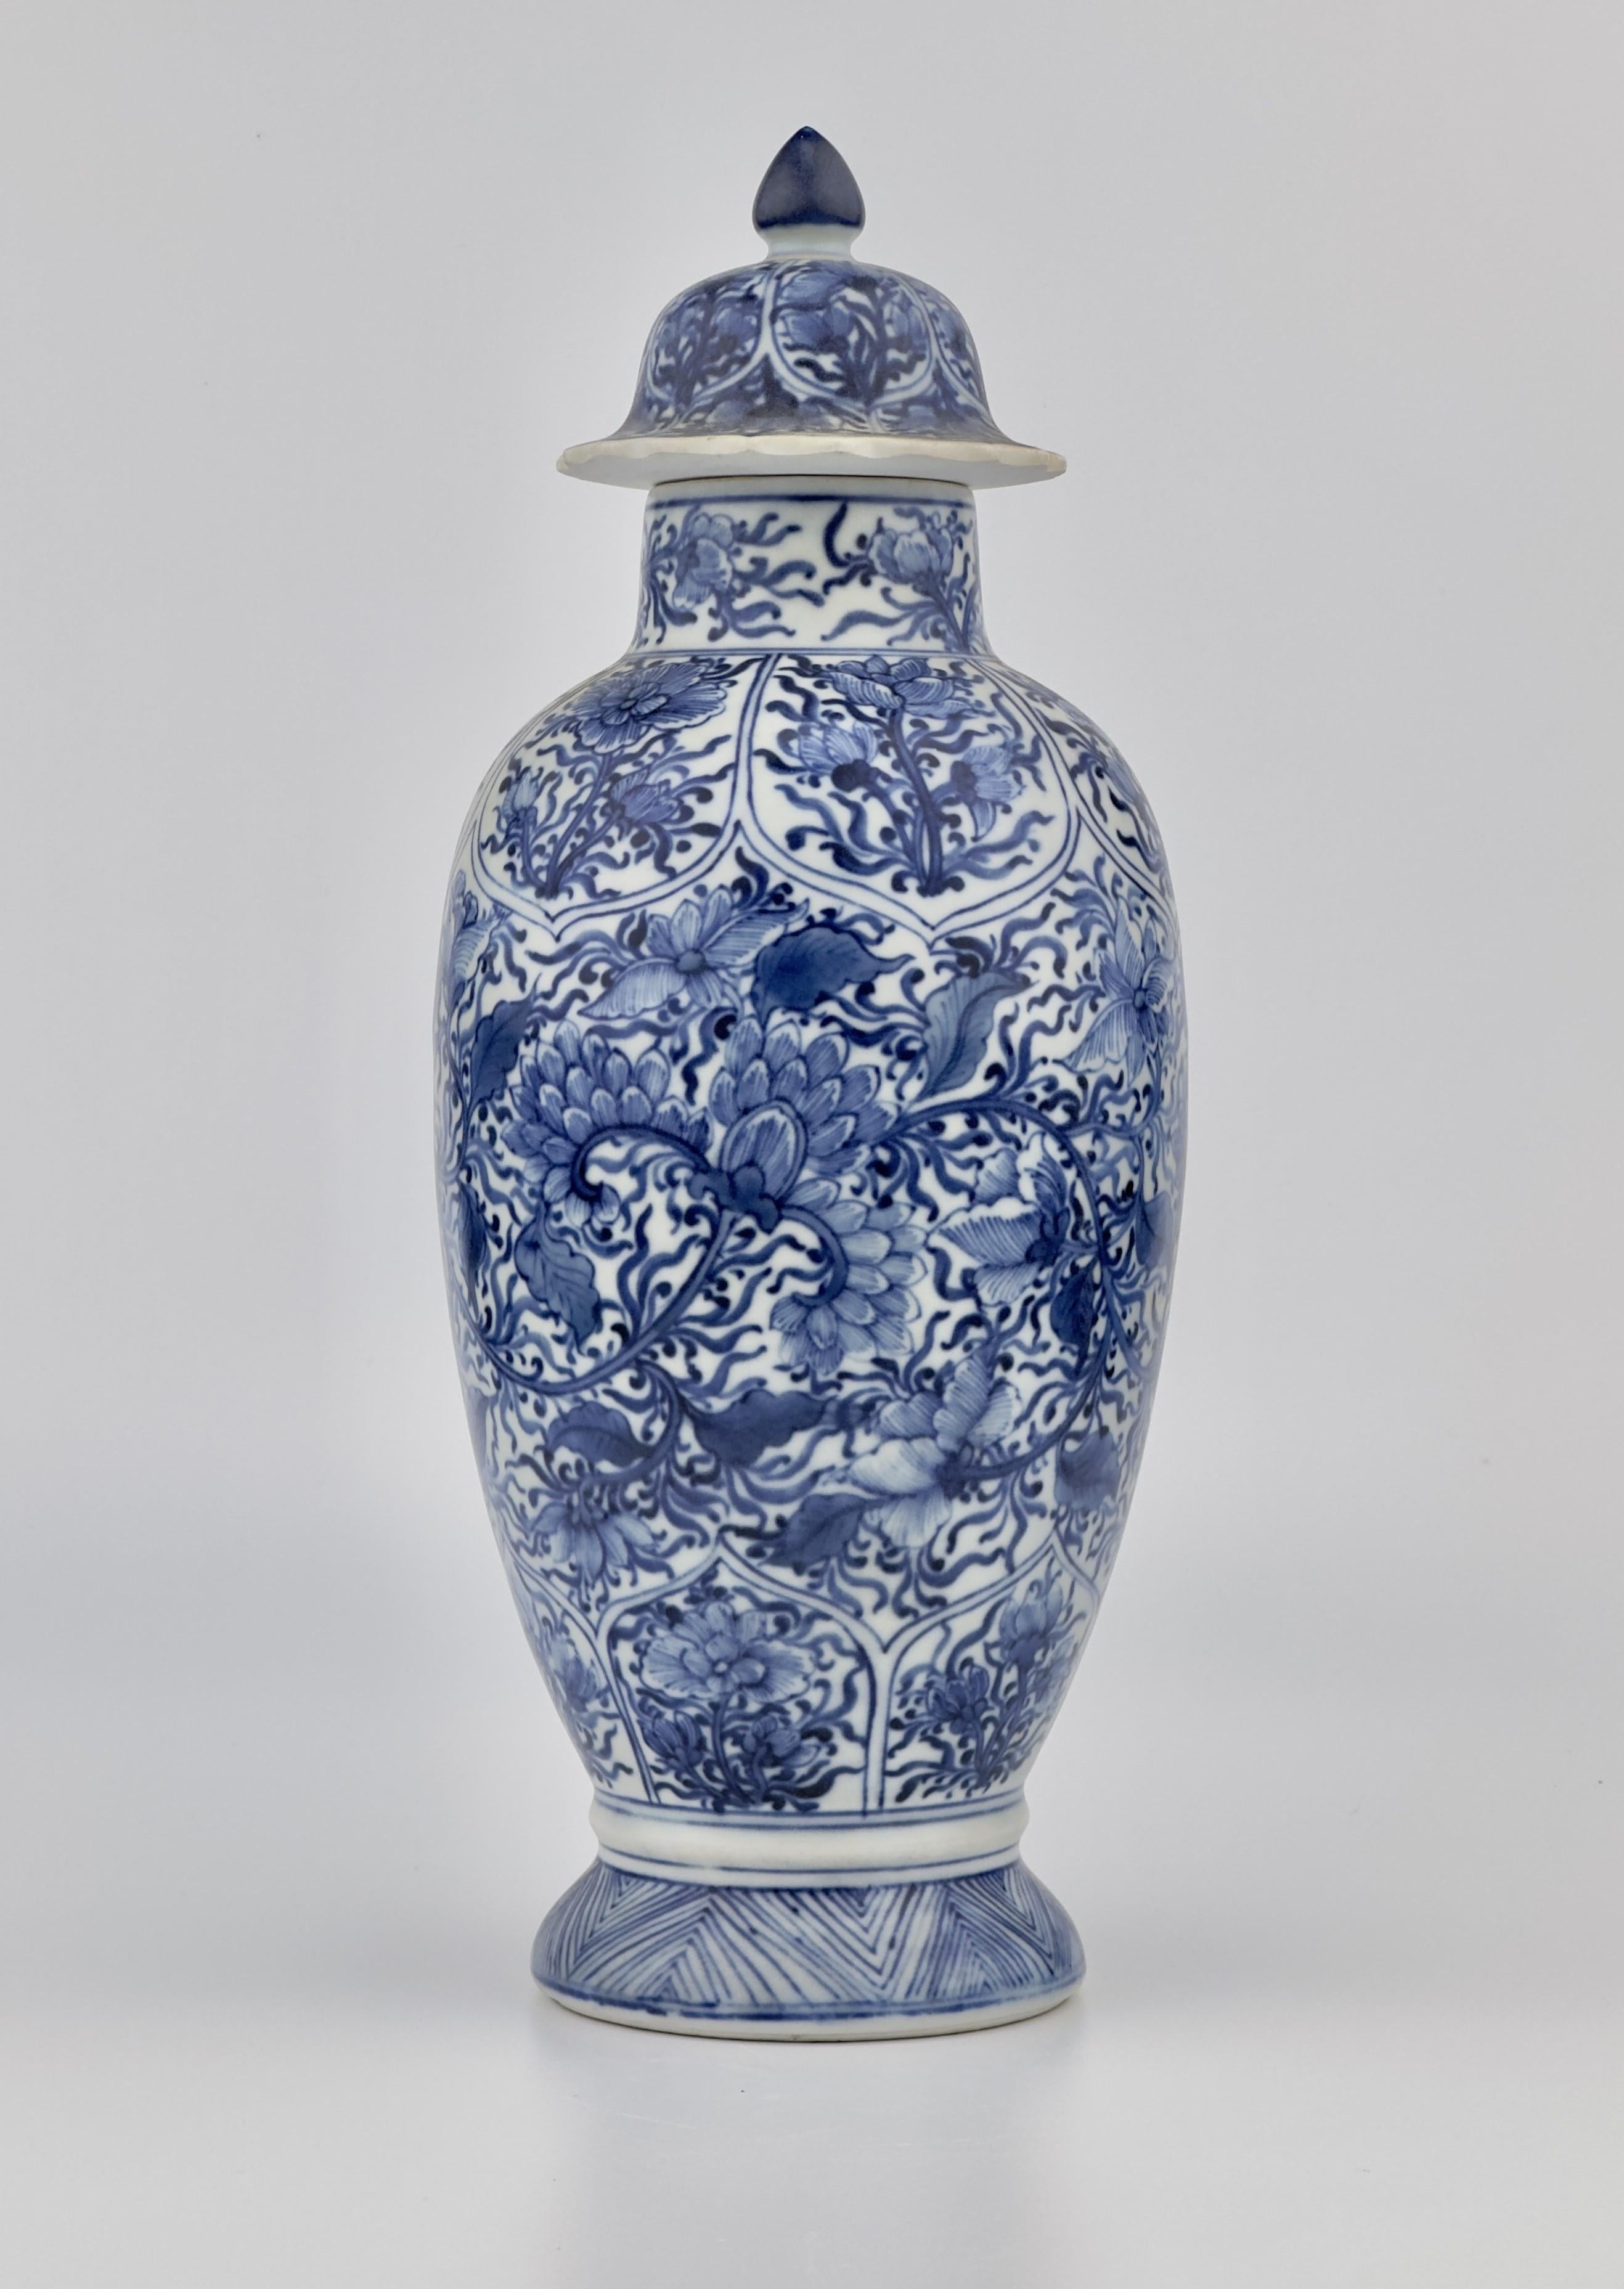 Die balusterförmige Vase erhebt sich von einem gespreizten Fuß zu einem kurzen, taillierten Hals, verziert in Unterglasurblau mit Blumenblüten auf blattartigen Stängeln.

Zeitraum : Qing-Dynastie, Herrschaft Kangxi
Herstellungsdatum: